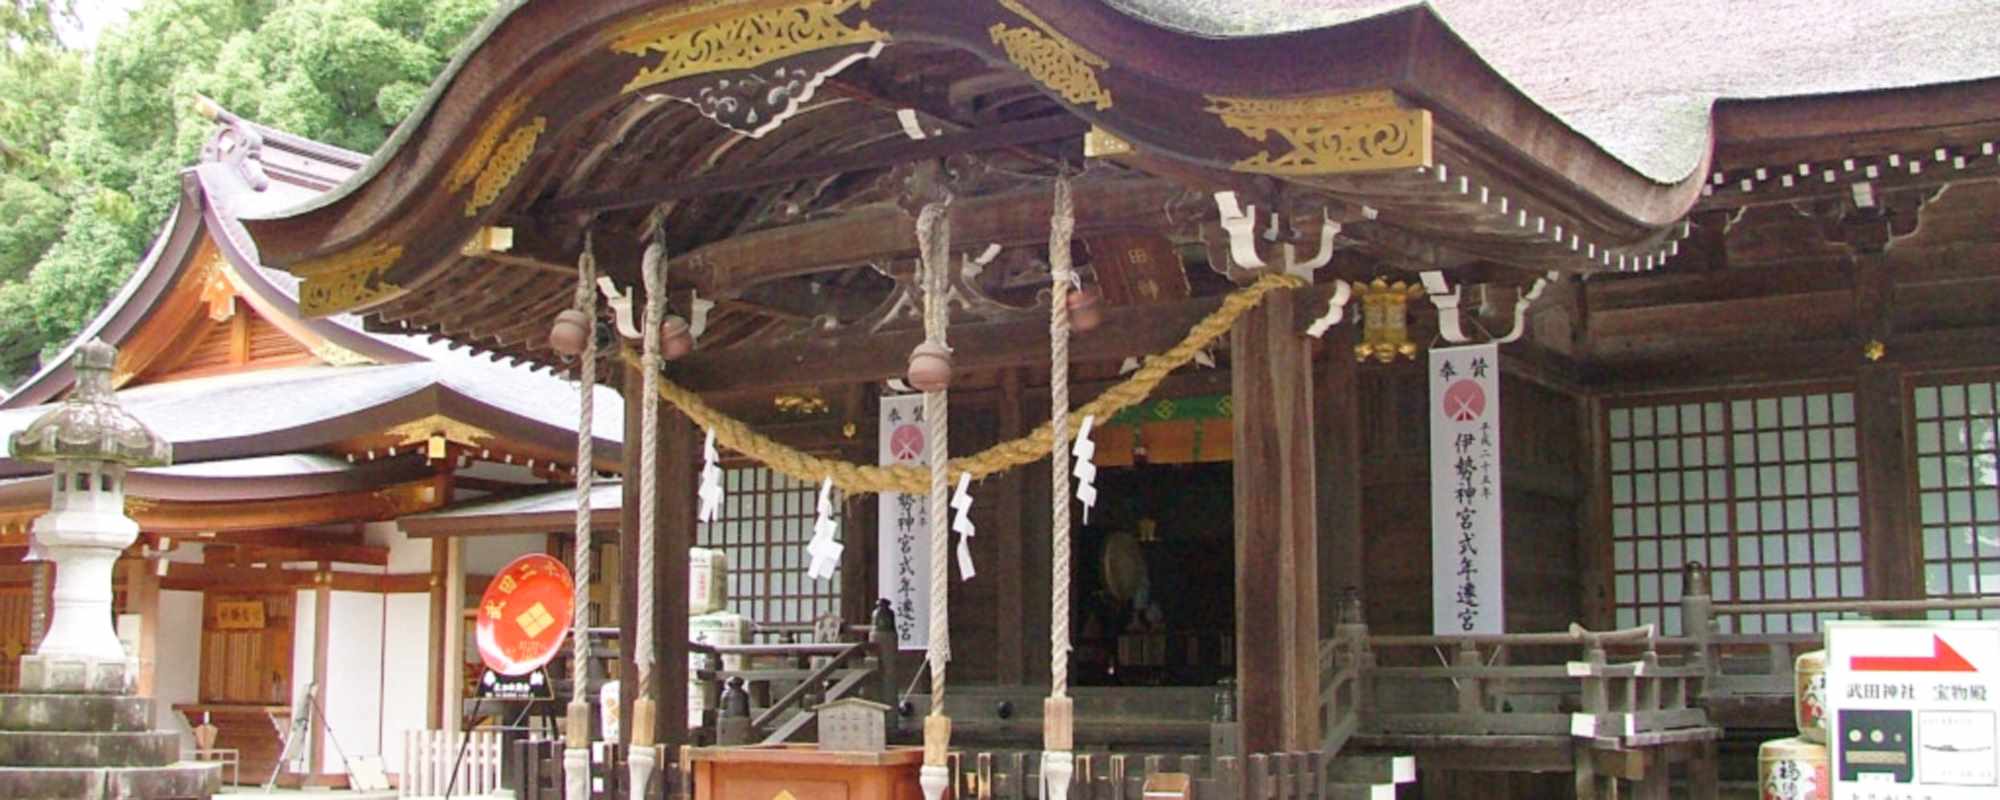 躑躅ヶ崎館・武田神社